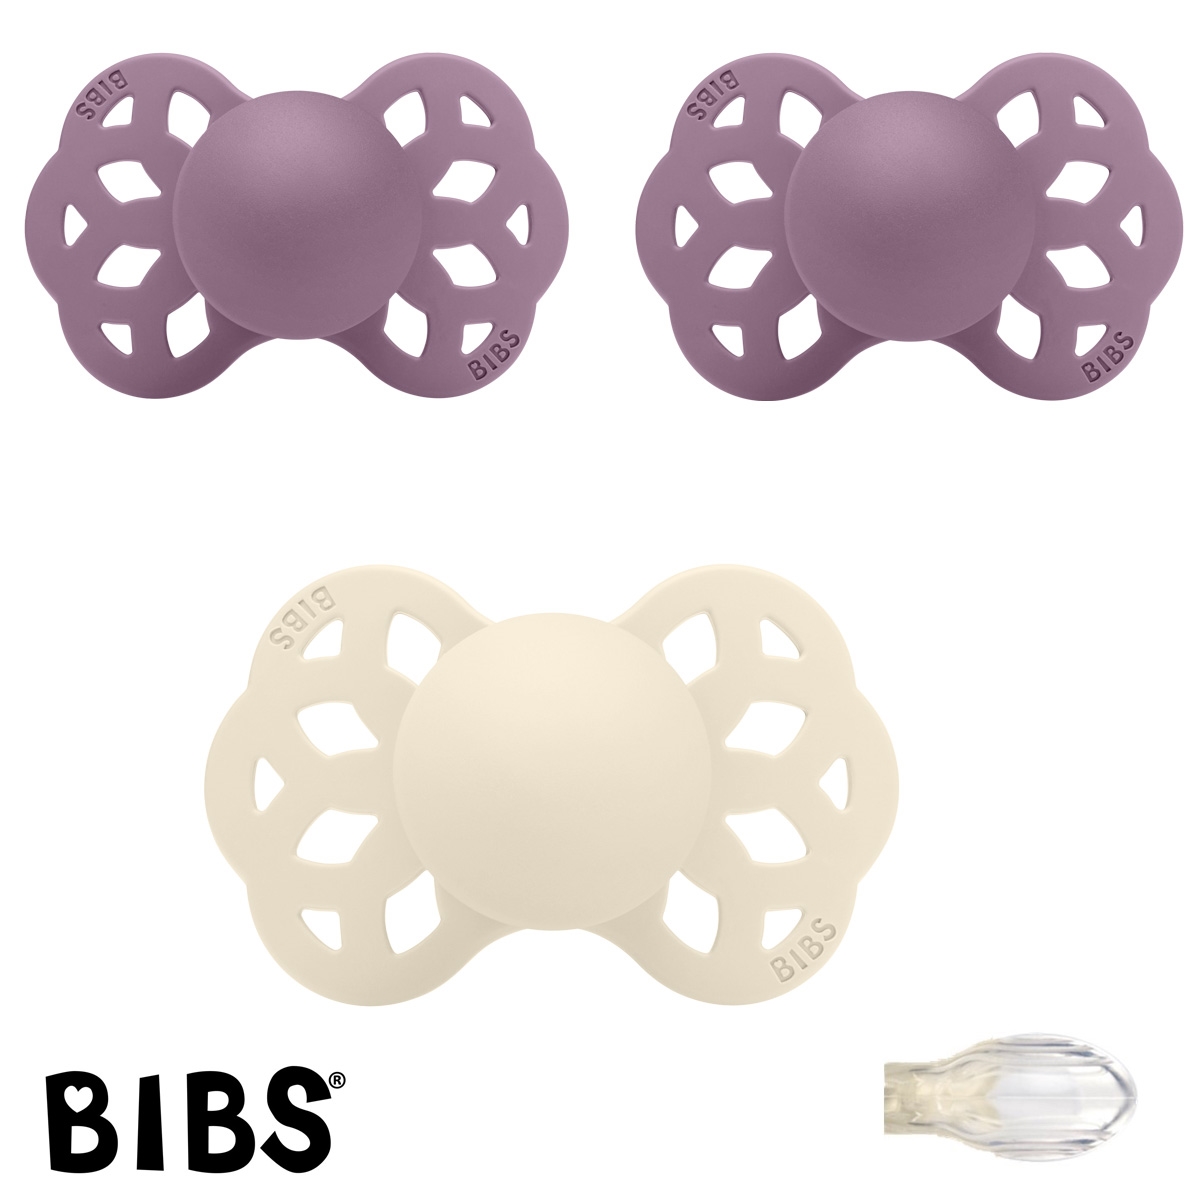 BIBS Infinity Sutter med navn str2, 1 Ivory, 2 Mauve, Symmetrisk Silikone, Pakke med 3 sutter